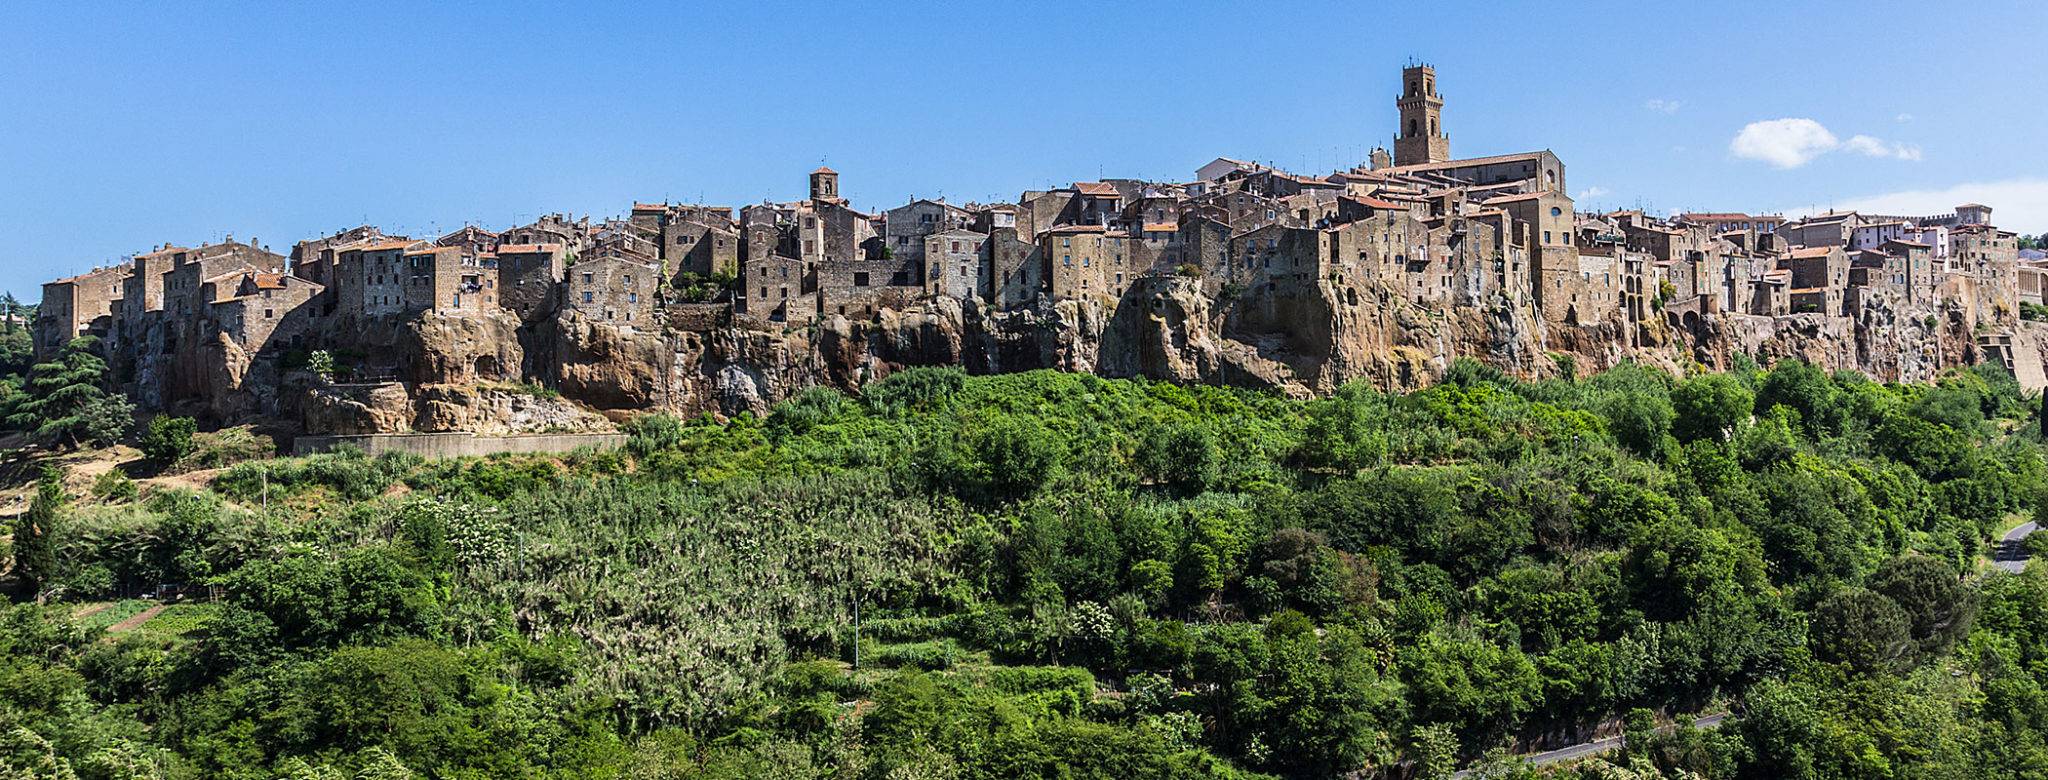 etrusker - Pitigliano liegt spektakulär auf einem dreihundert Meter hohen Tuffsteinfelsen. Pitigliano liegt spektakulär auf einem dreihundert Meter hohen Tuffsteinfelsen. Das Städtchen ist bis heute die größte Ortschaft etruskischen Ursprungs im Gebiet des Fioratals. 